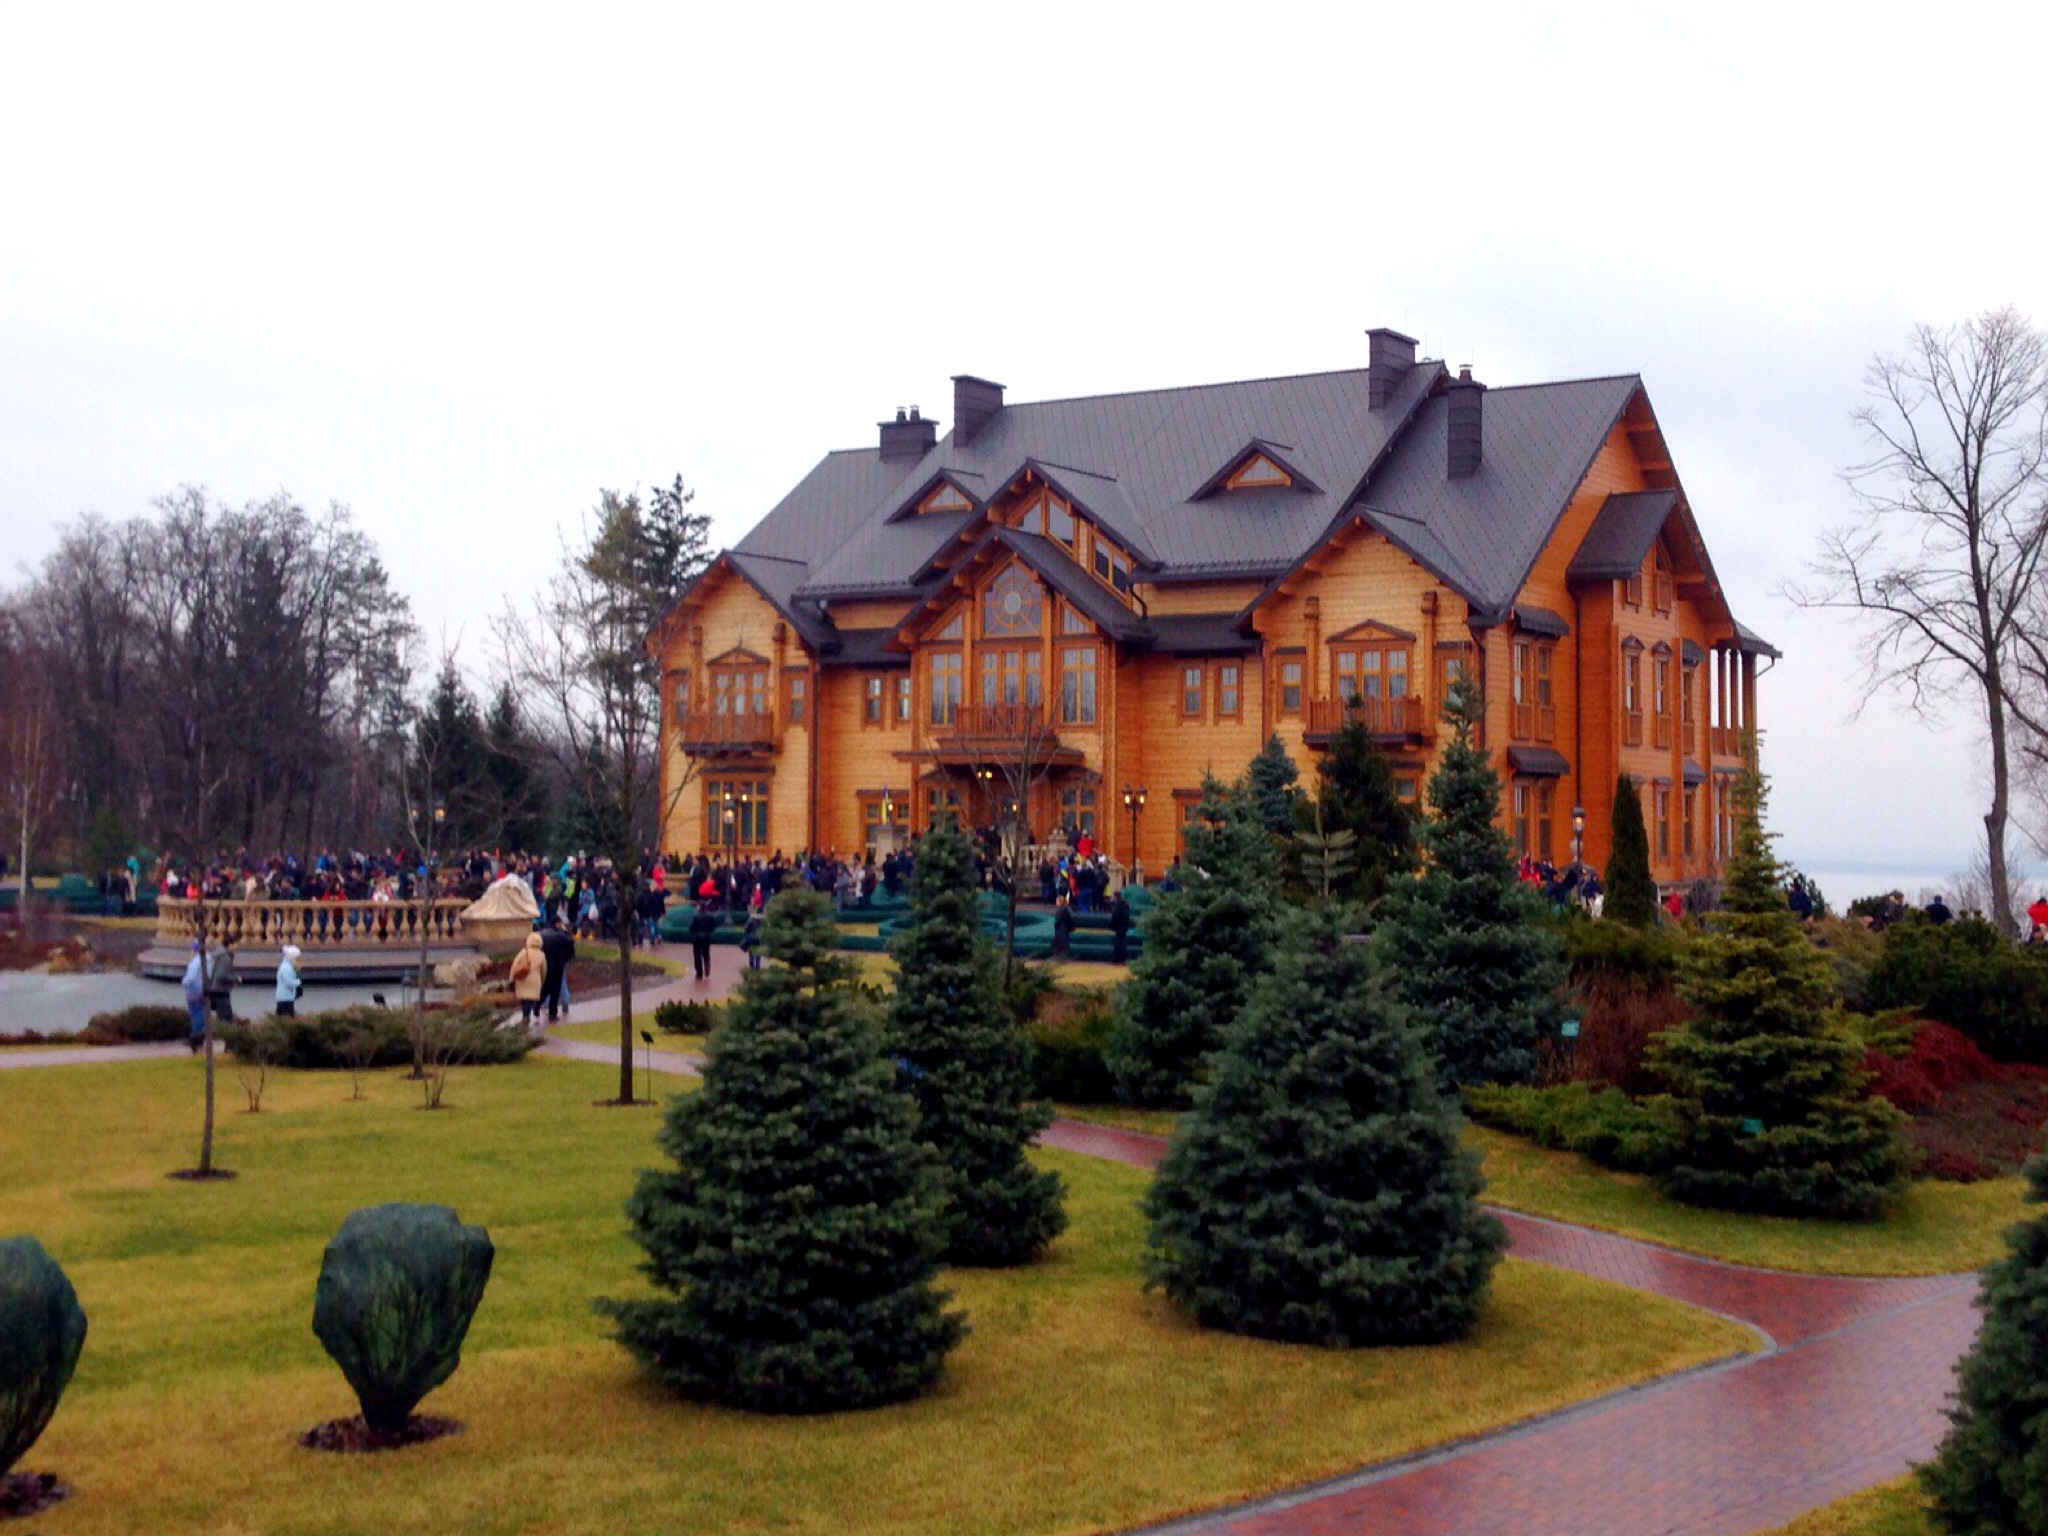 Резиденция «Межигорье», в которой жил Виктор Янукович, когда он был премьер-министром, а затем президентом Украины, стала теперь музеем жизни в роскоши. Янукович бежал в Россию после революции в Украине в 2014 году, совершившейся в результате массовых про